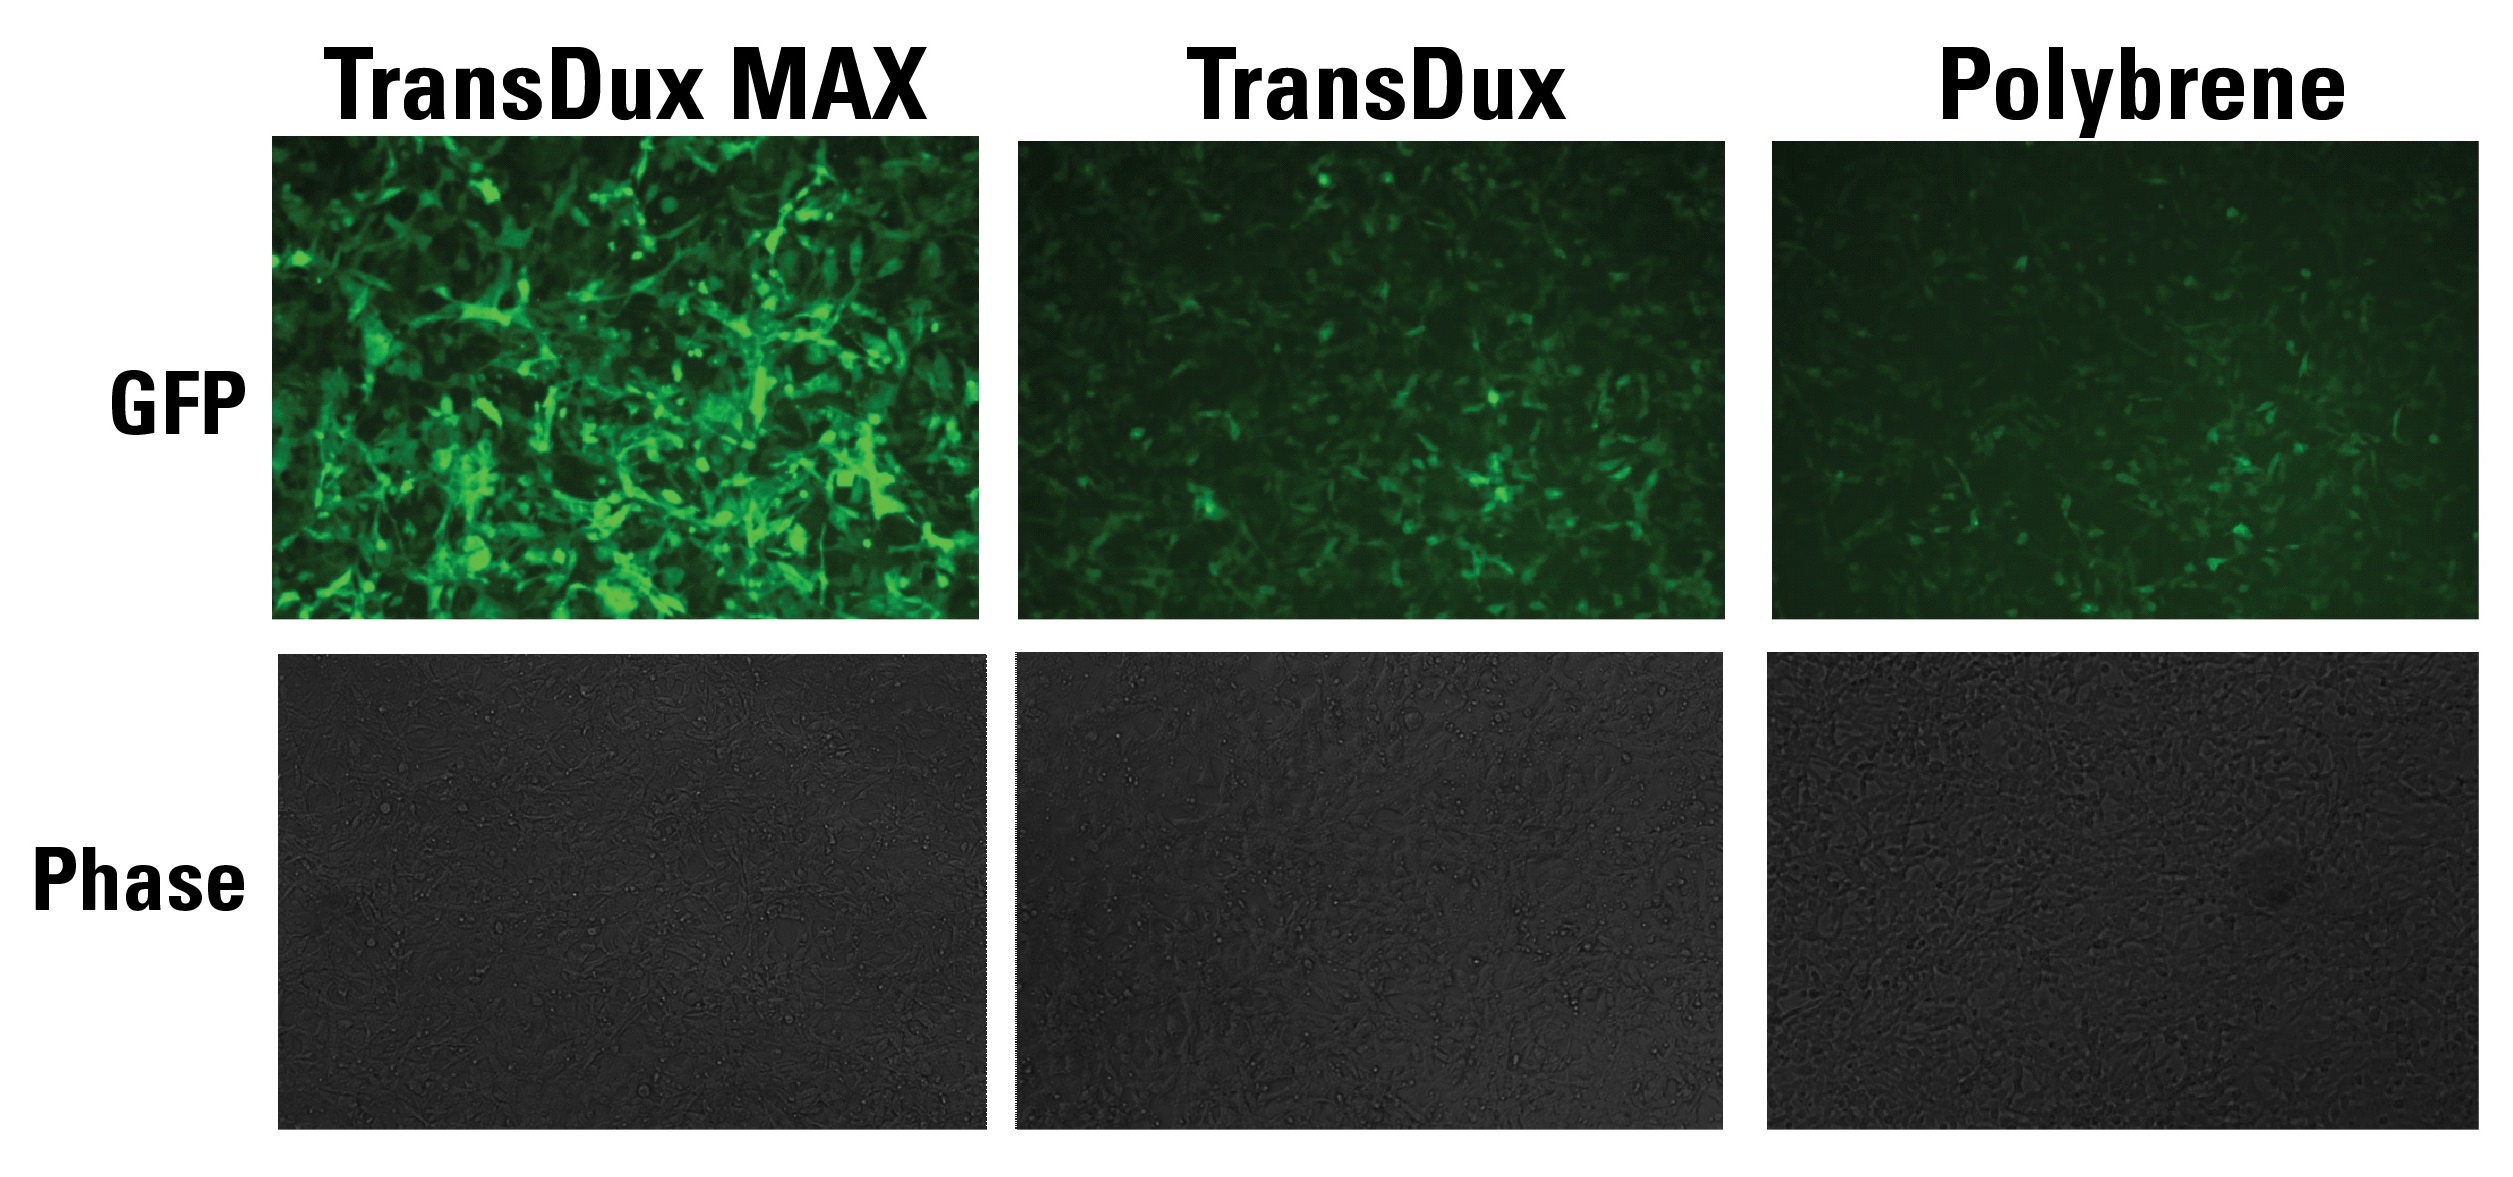 TransDux MAXと他社製品の比較染色画像